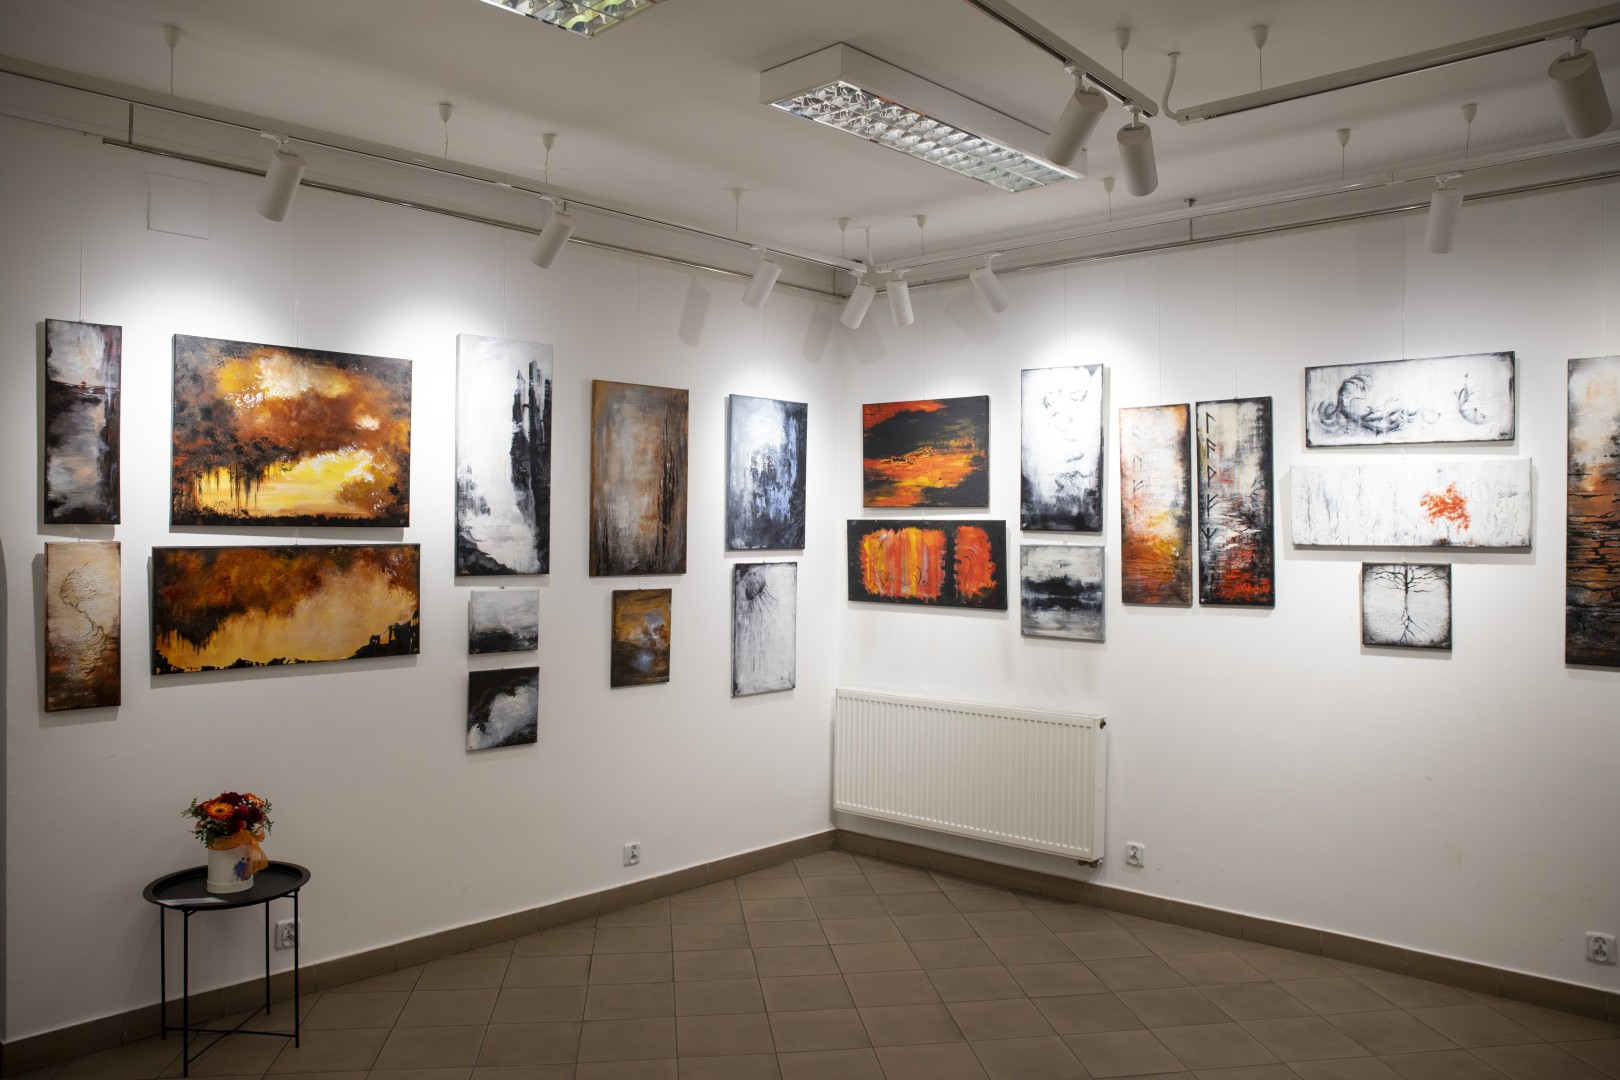 Wernisaż wystawy malarstwa i fotografii Anny Śnieżek/2023.03.03, Galeria ARTadres